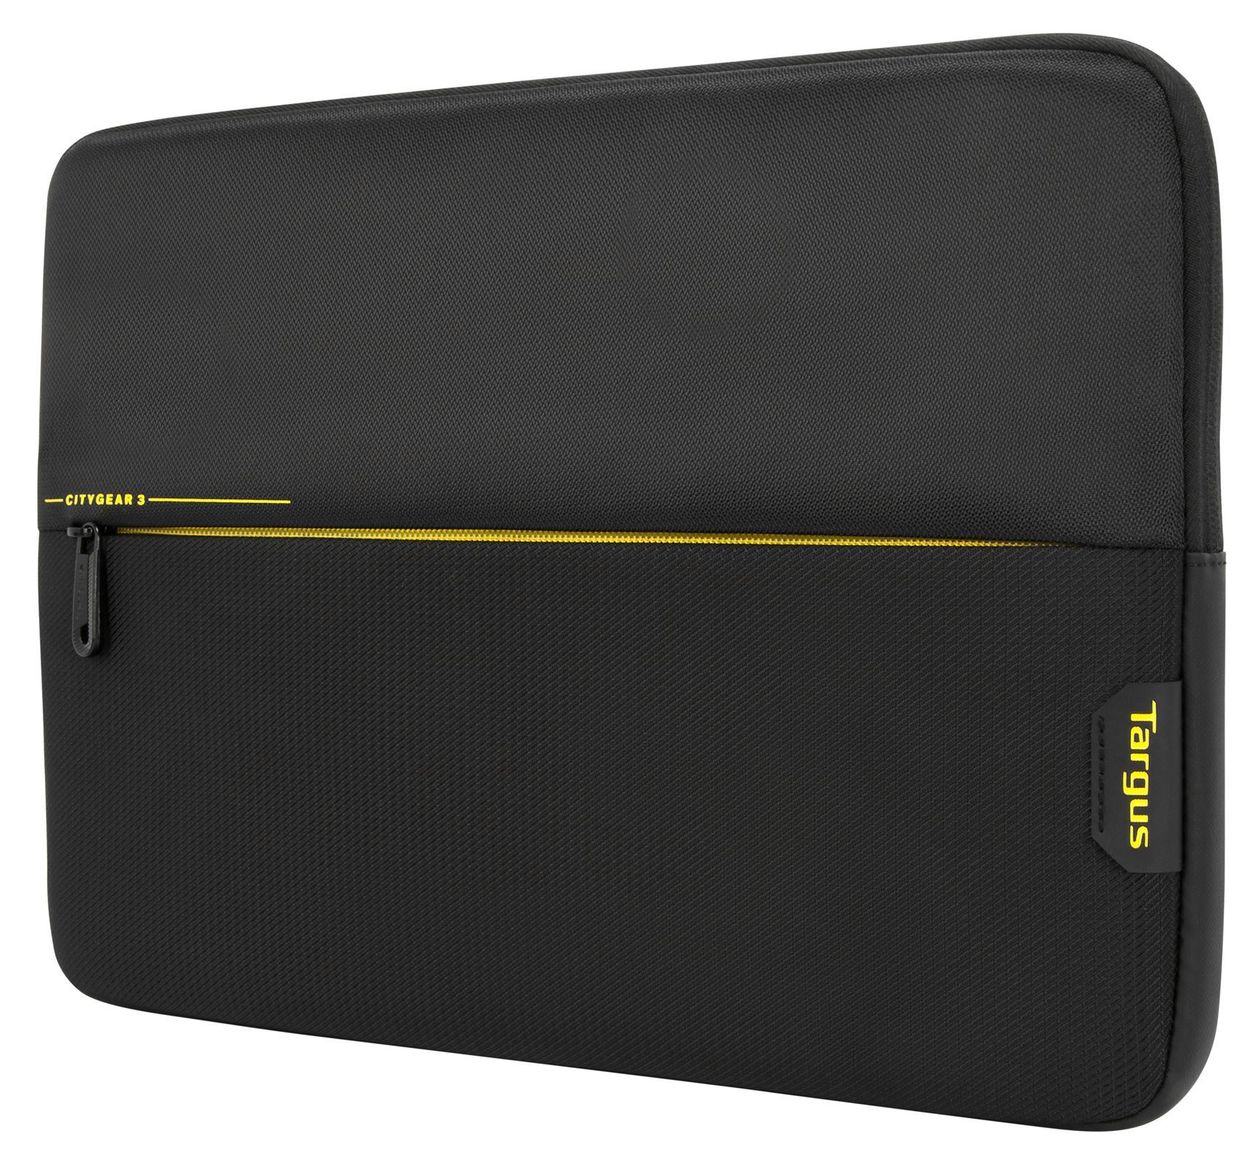 CityGear 3 Schutzhülle aus Kunststoff für Jede Marke 15.6” Laptop bis 39,6 cm (15.6") mit Reißverschluss (Schwarz, Gelb) 